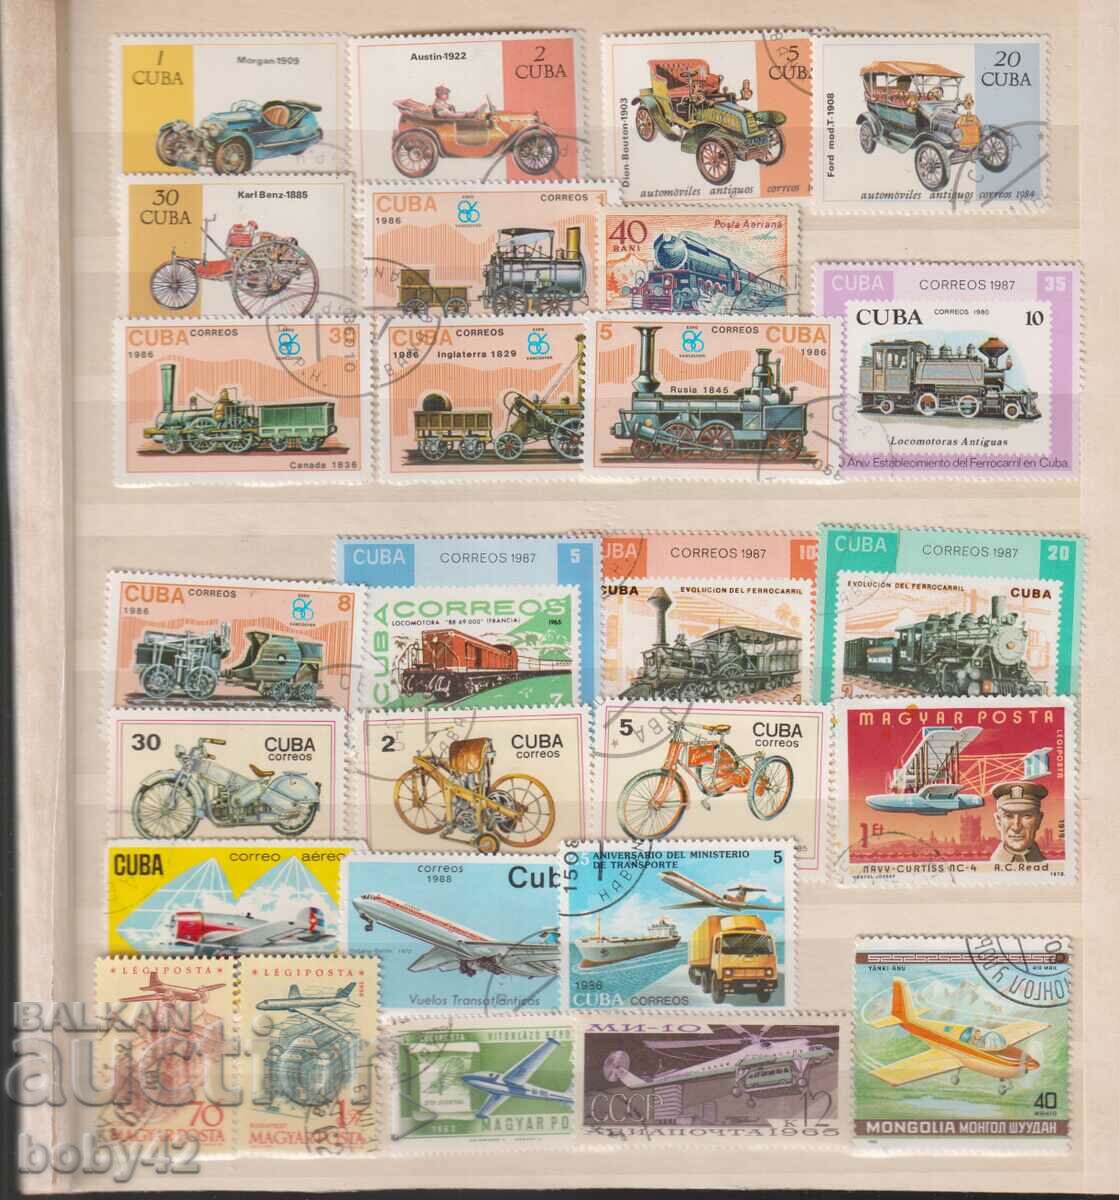 Μεταφορικά μέσα - 27 γραμματόσημα